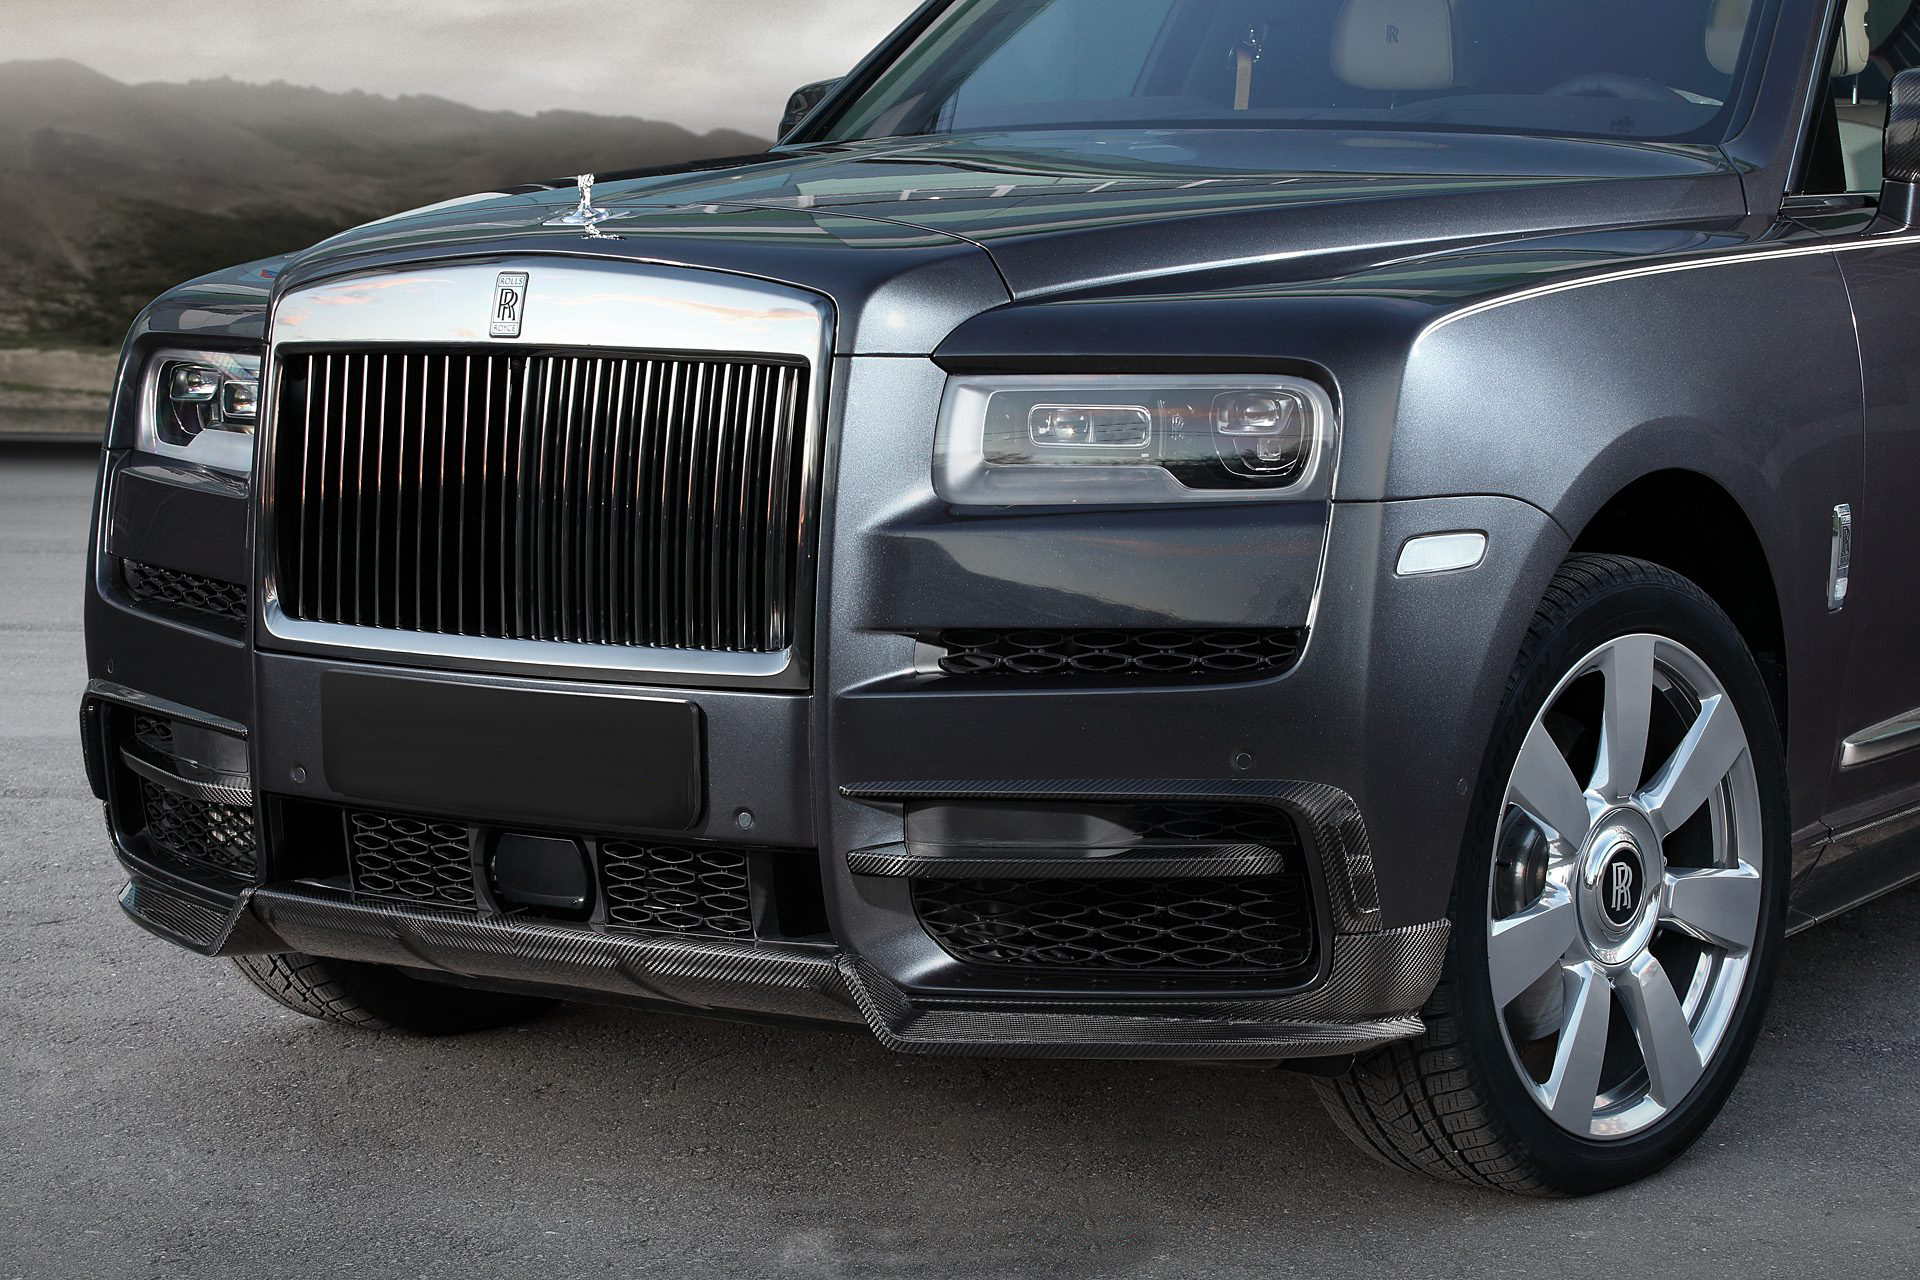 Hodoor Performance Carbon fiber Front lip cover for Rolls Royce